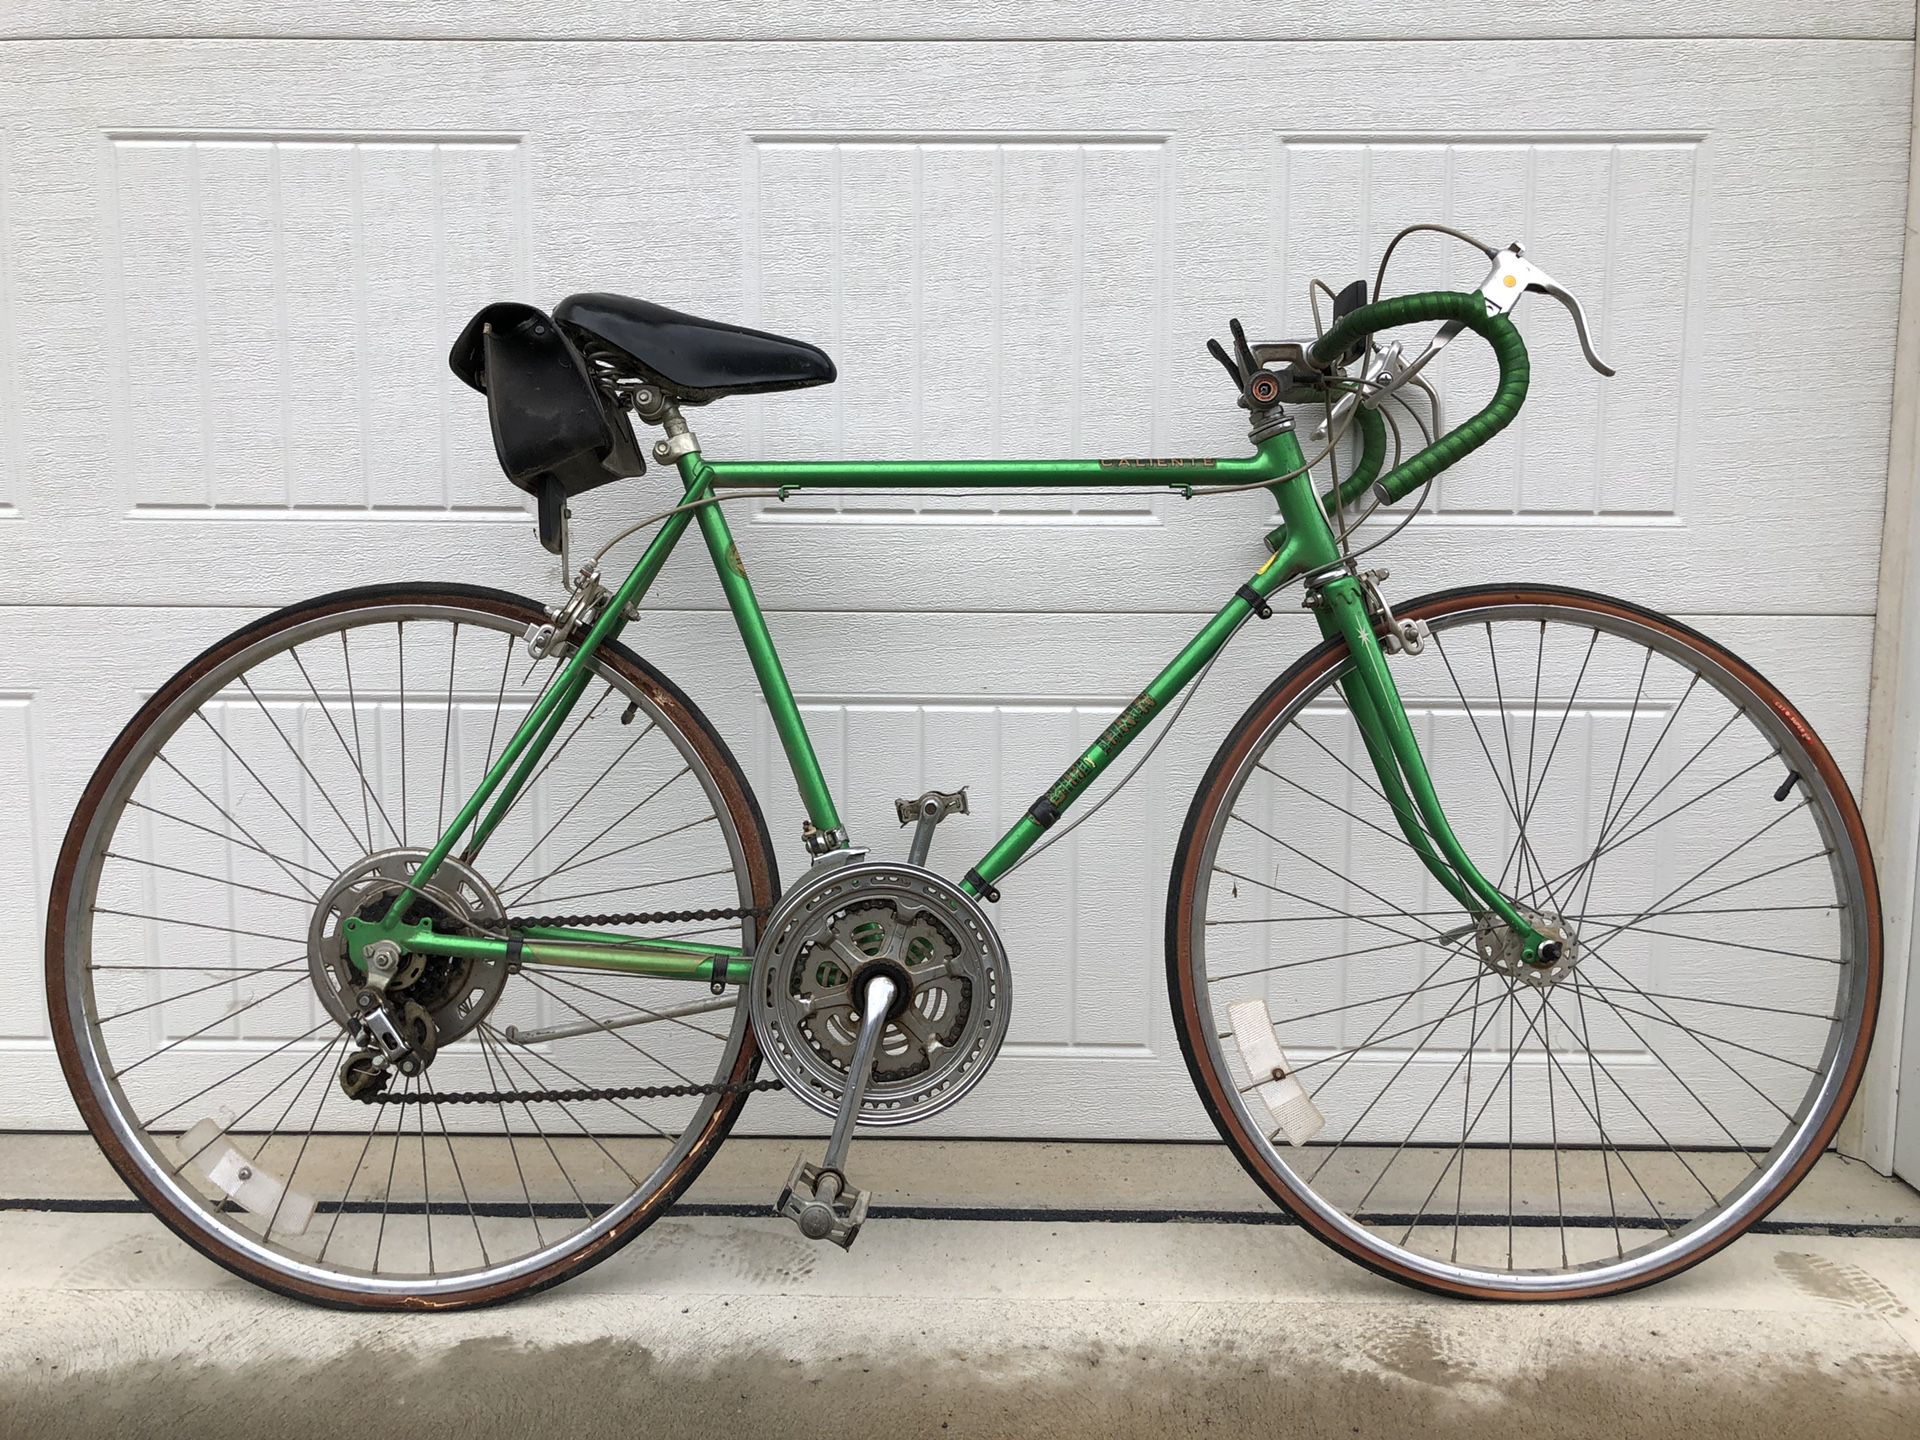 Late 70’s Schwinn Caliente bicycle